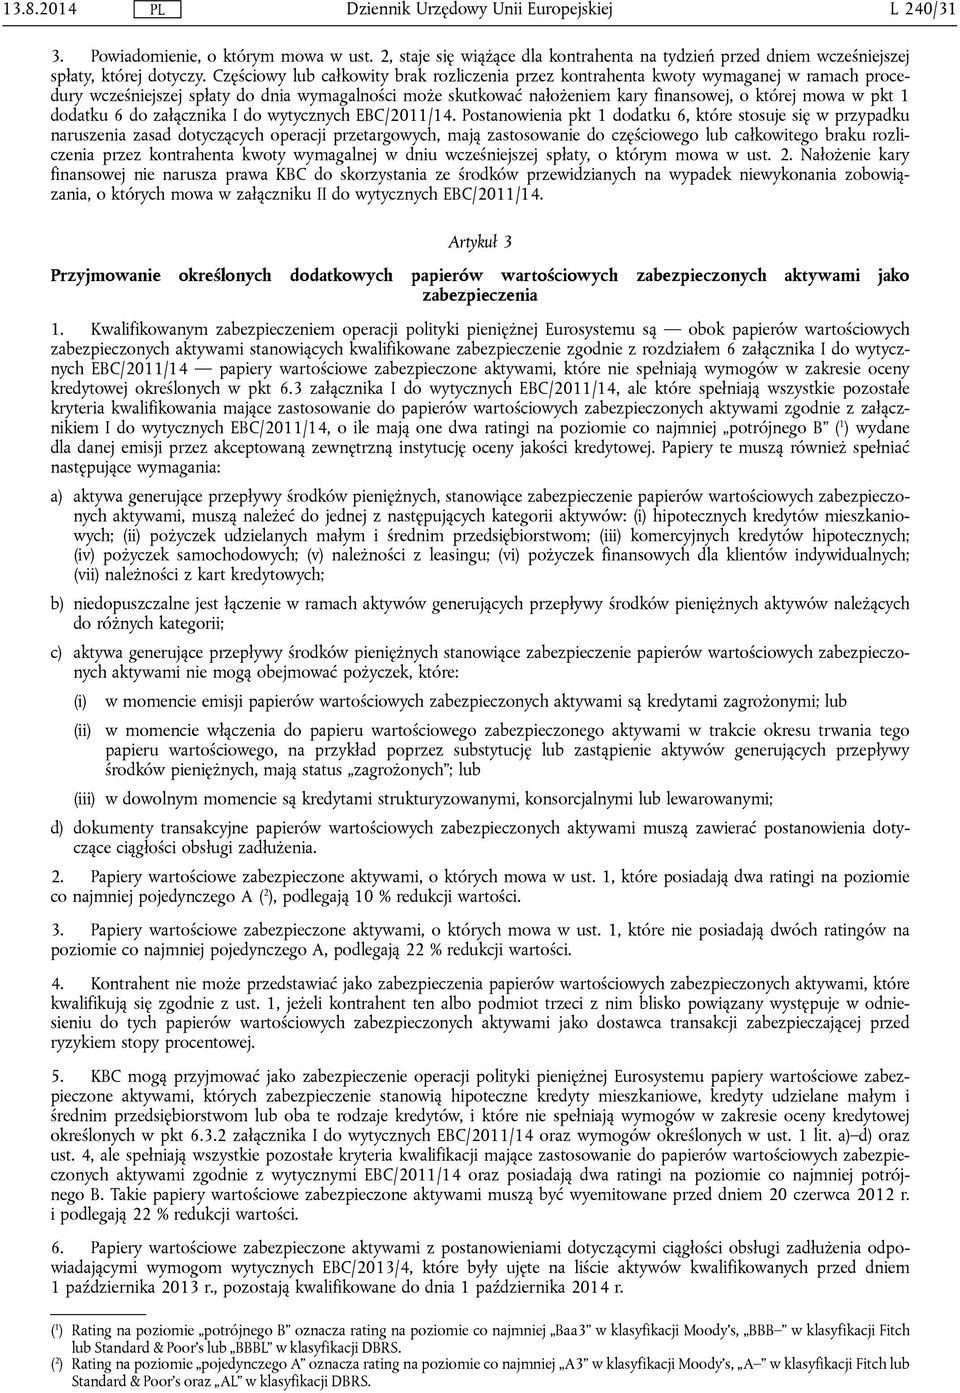 1 dodatku 6 do załącznika I do wytycznych EBC/2011/14.